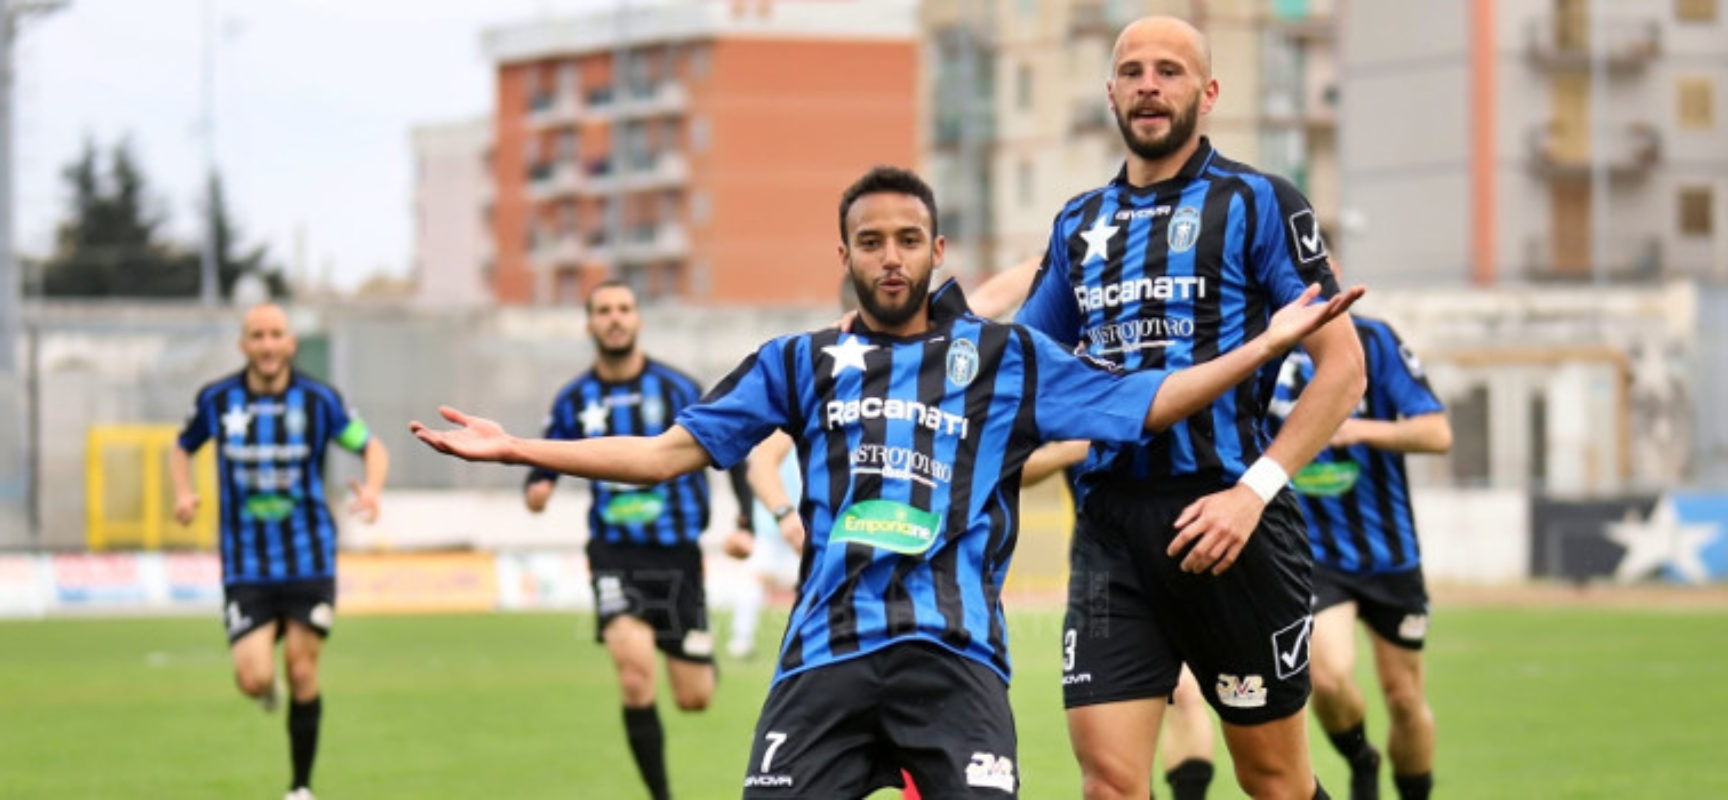 Bisceglie Calcio, arriva la Vibonese, Mansour: “Fare la gara perfetta”